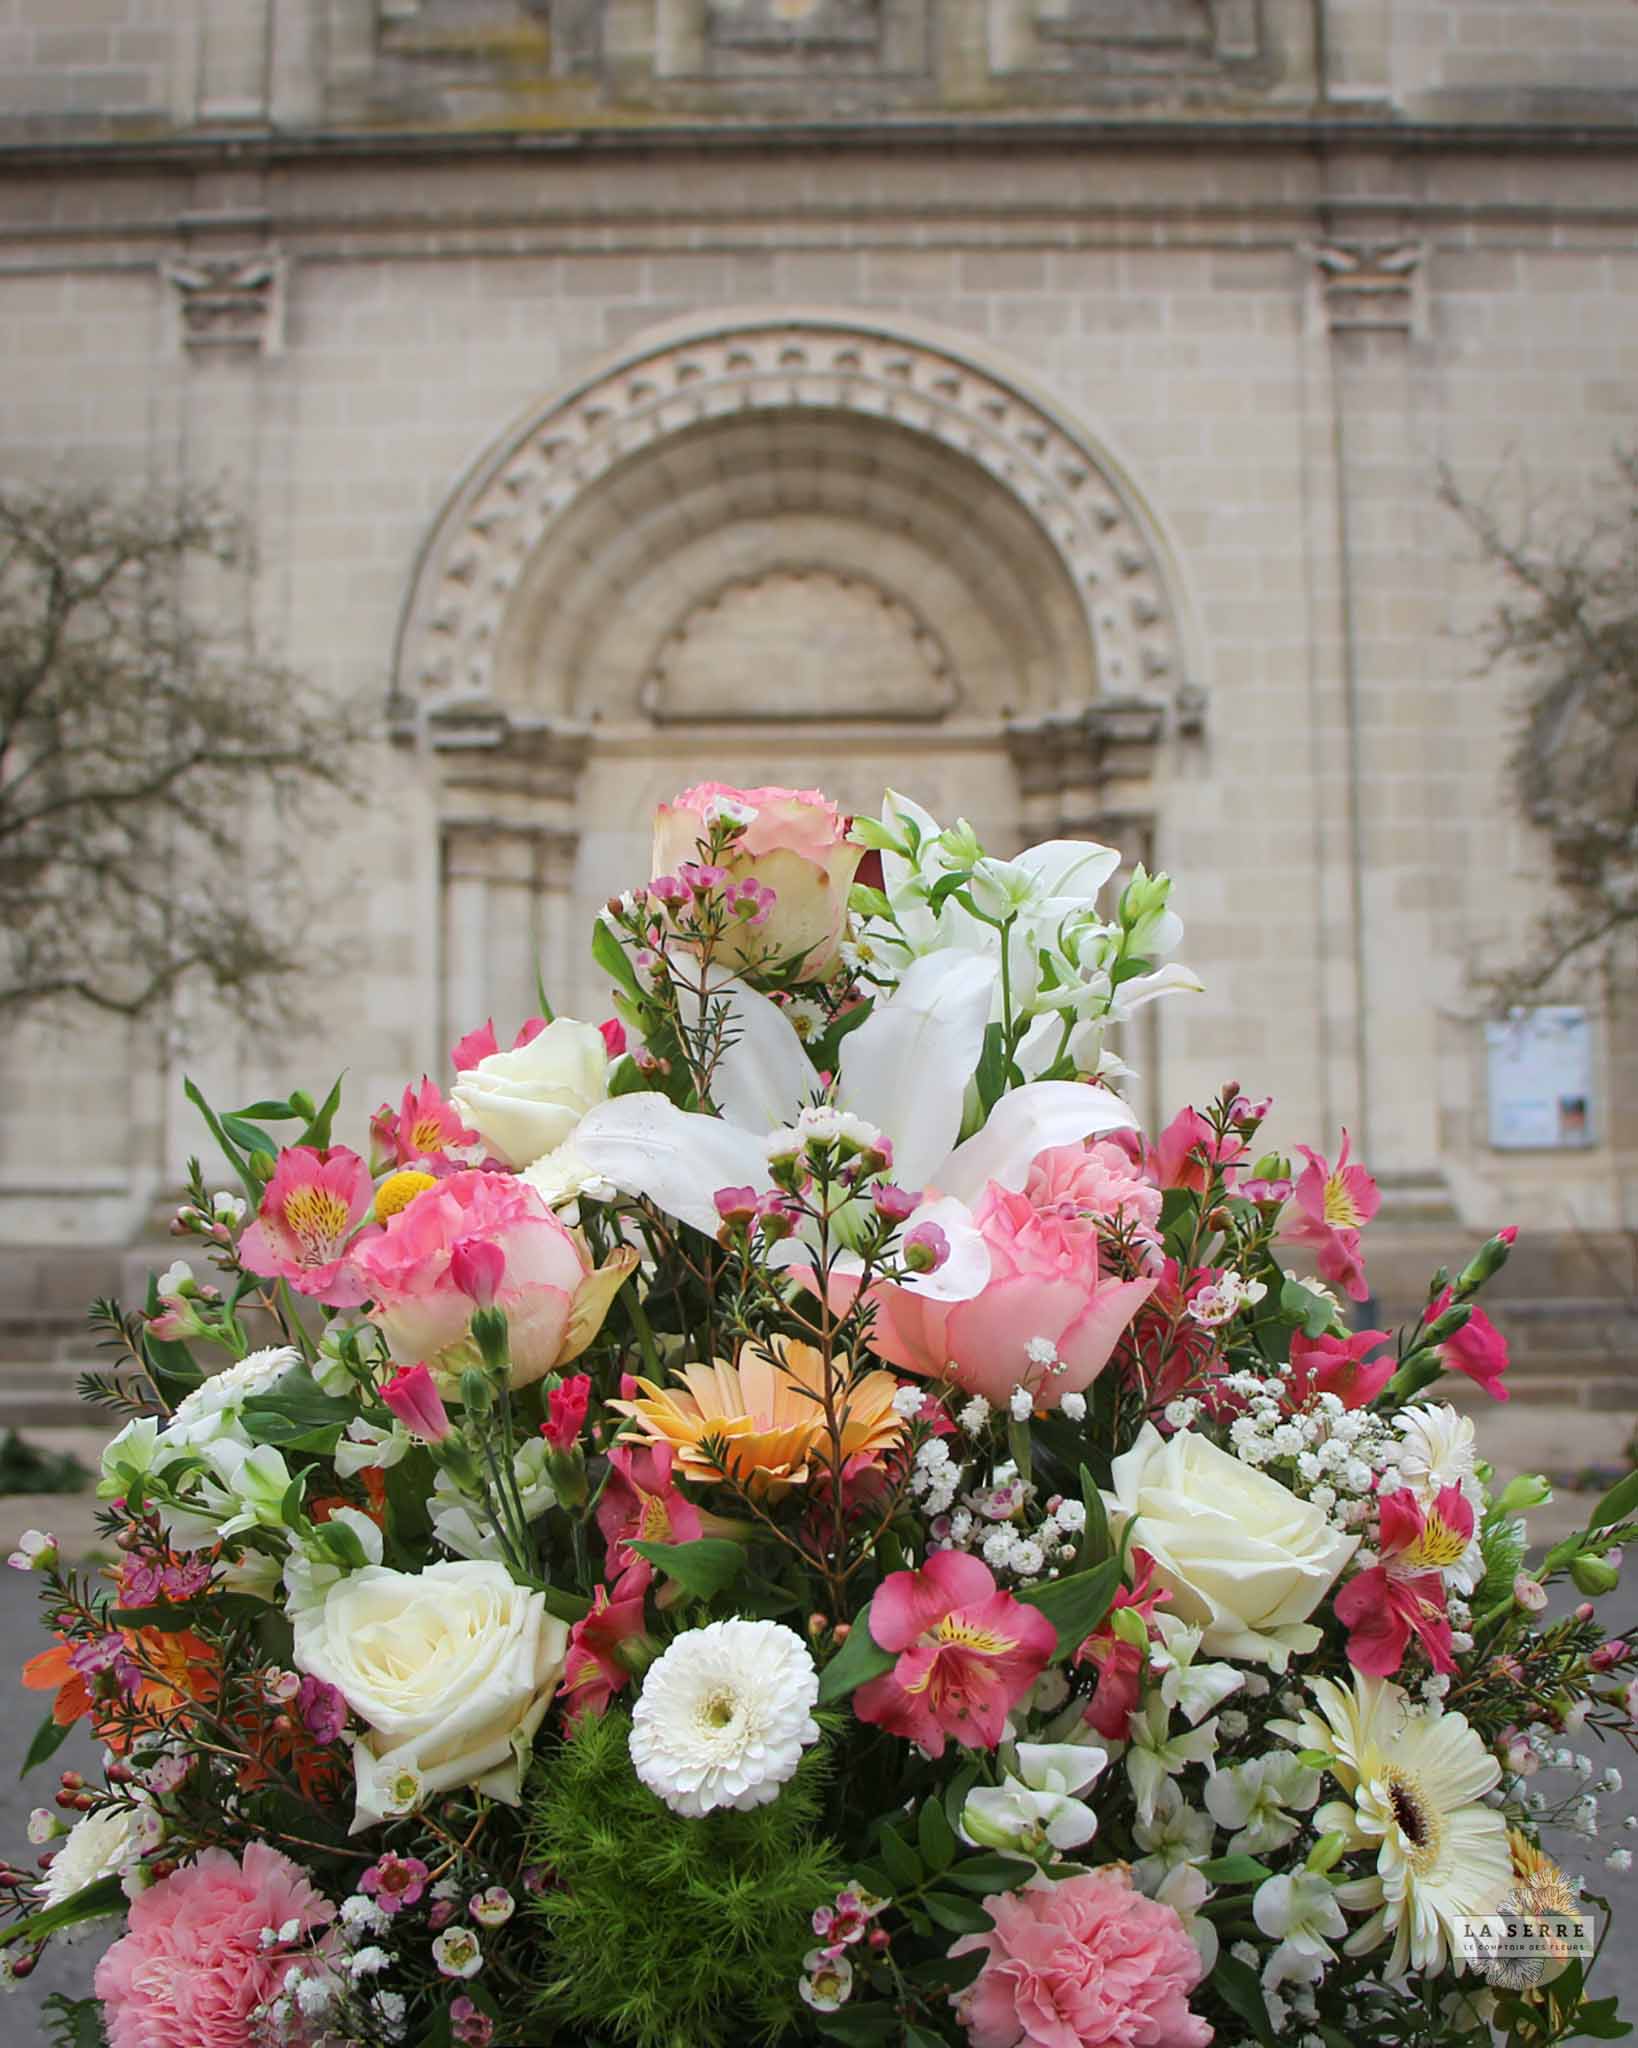 Composition florale pour un deuil.Coussin conique - Livraison rapide à Nantes et sa périphérie. LA SERRE fleuriste Nantes